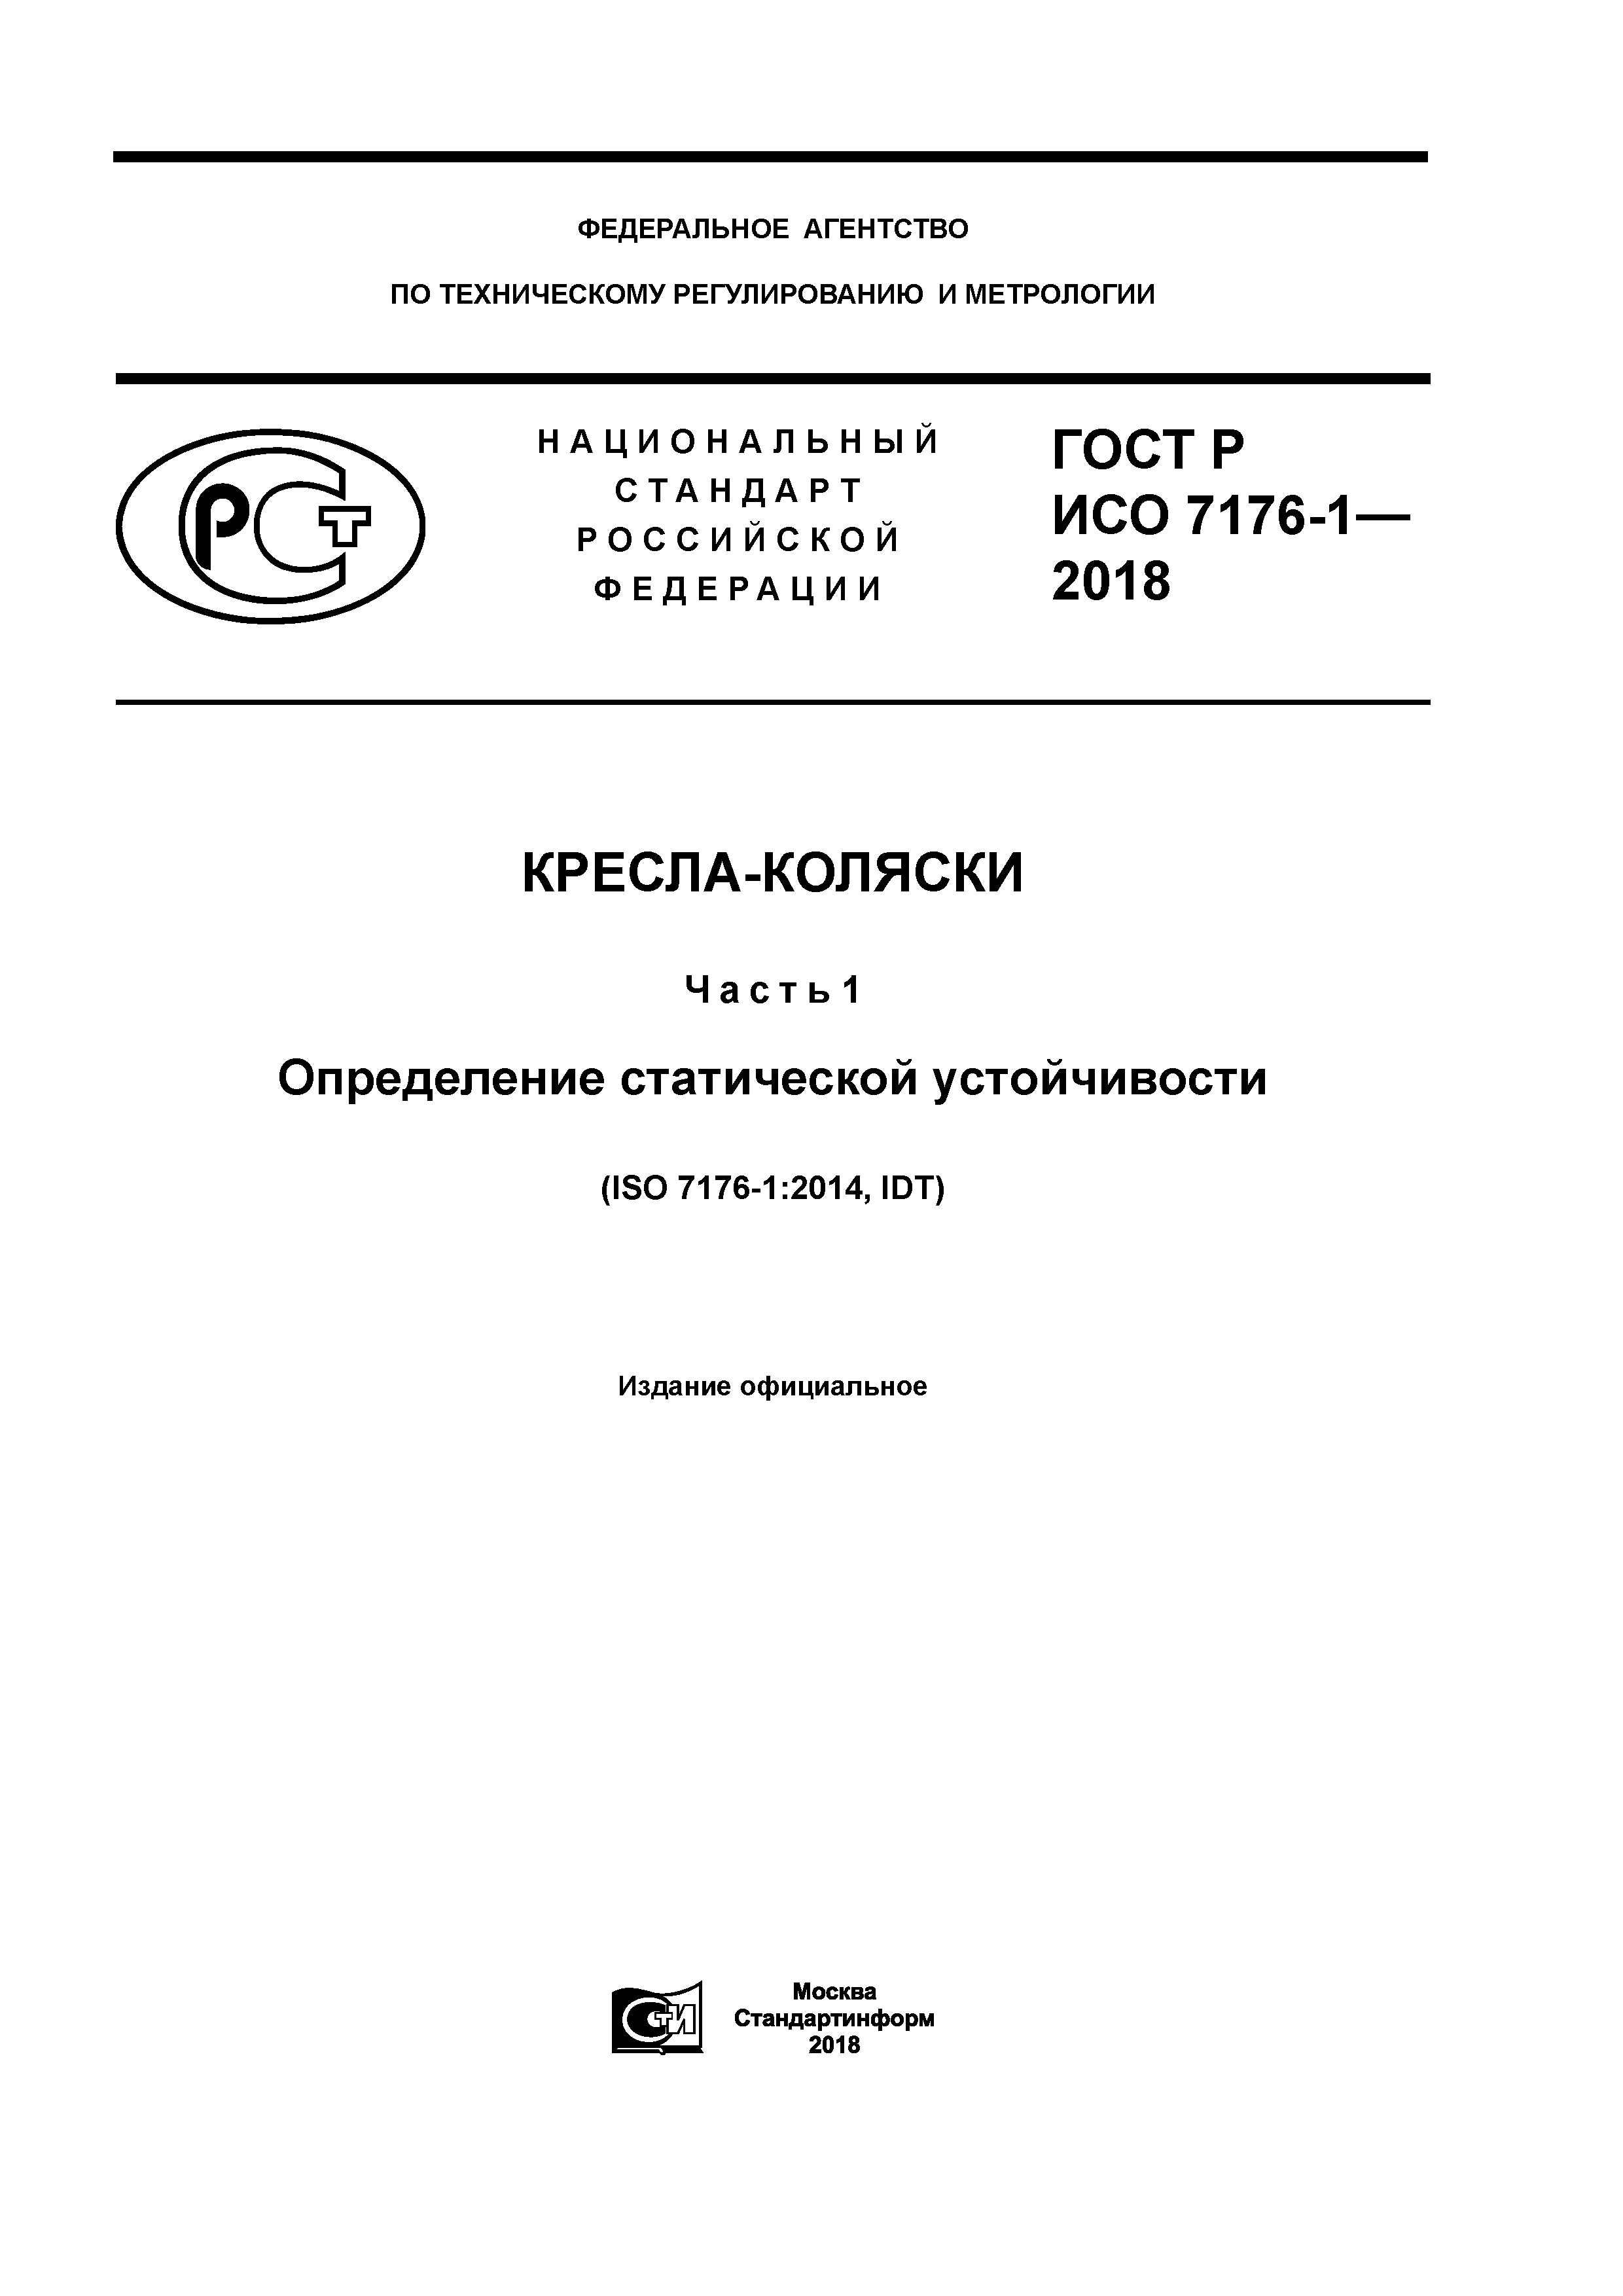 ГОСТ Р ИСО 7176-1-2018